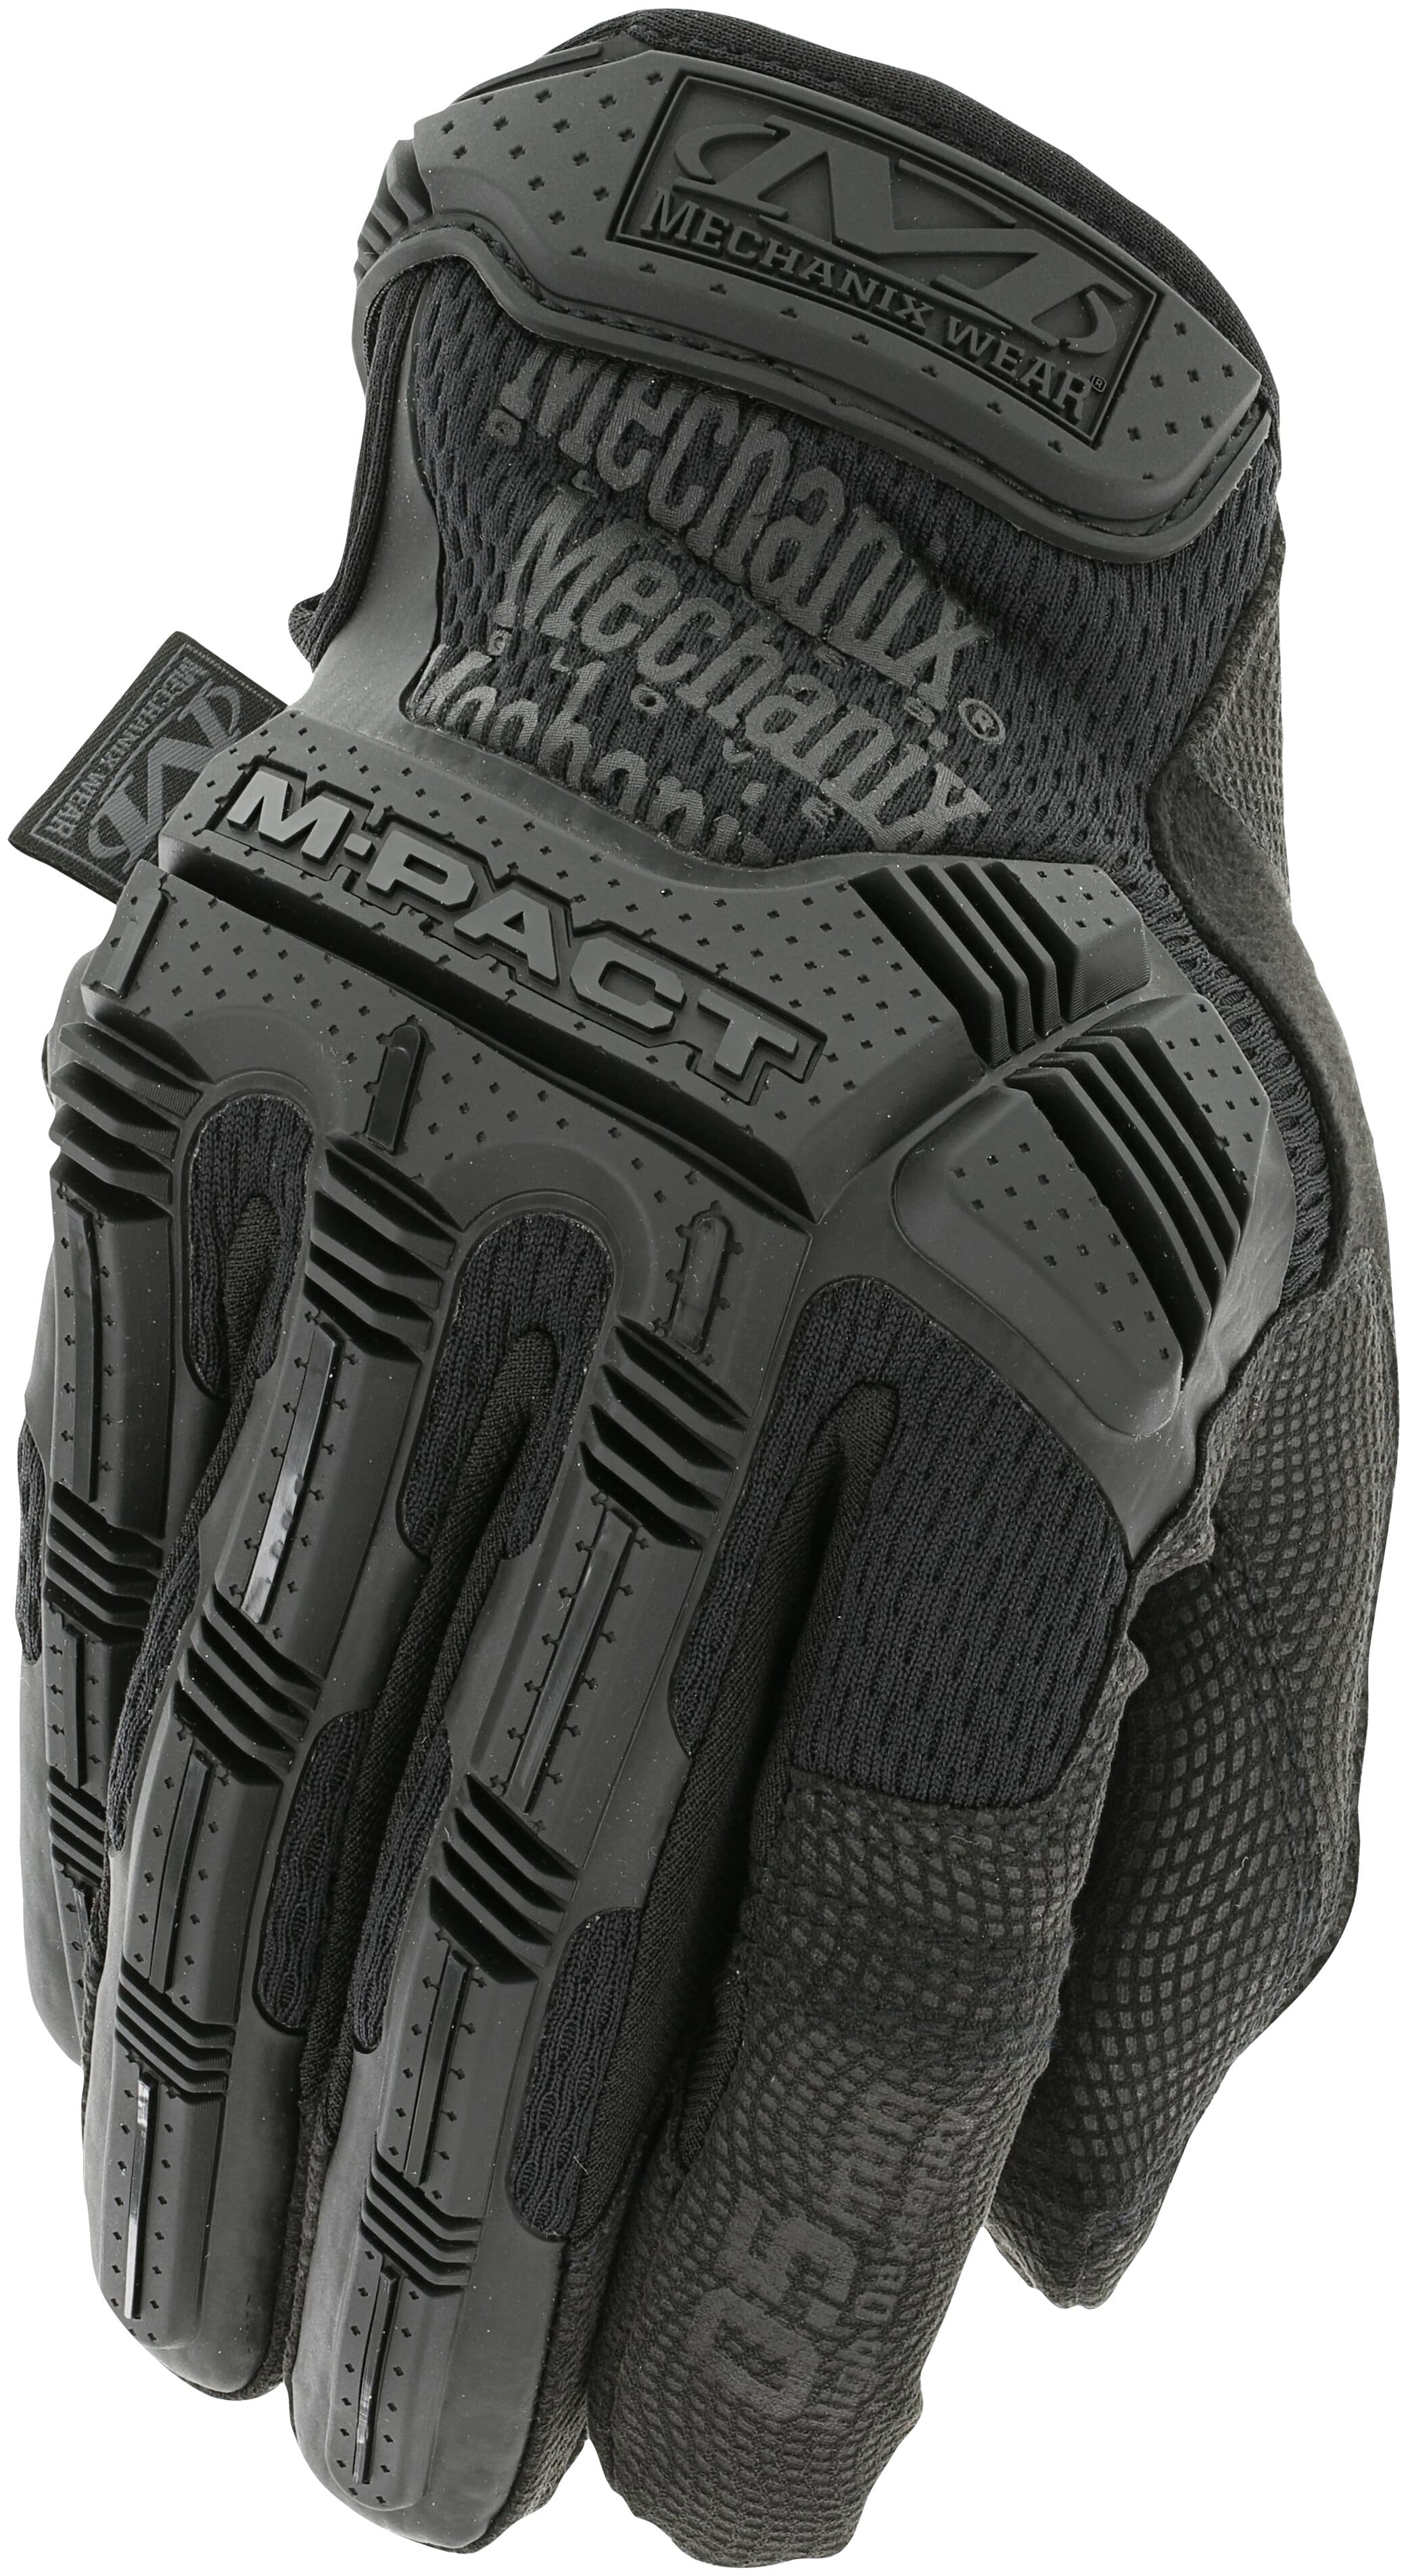 Перчатки Mechanix wear: тактические модели M-pact, FastFit и Breacher. Особенности американской продукции. Помощь в выборе